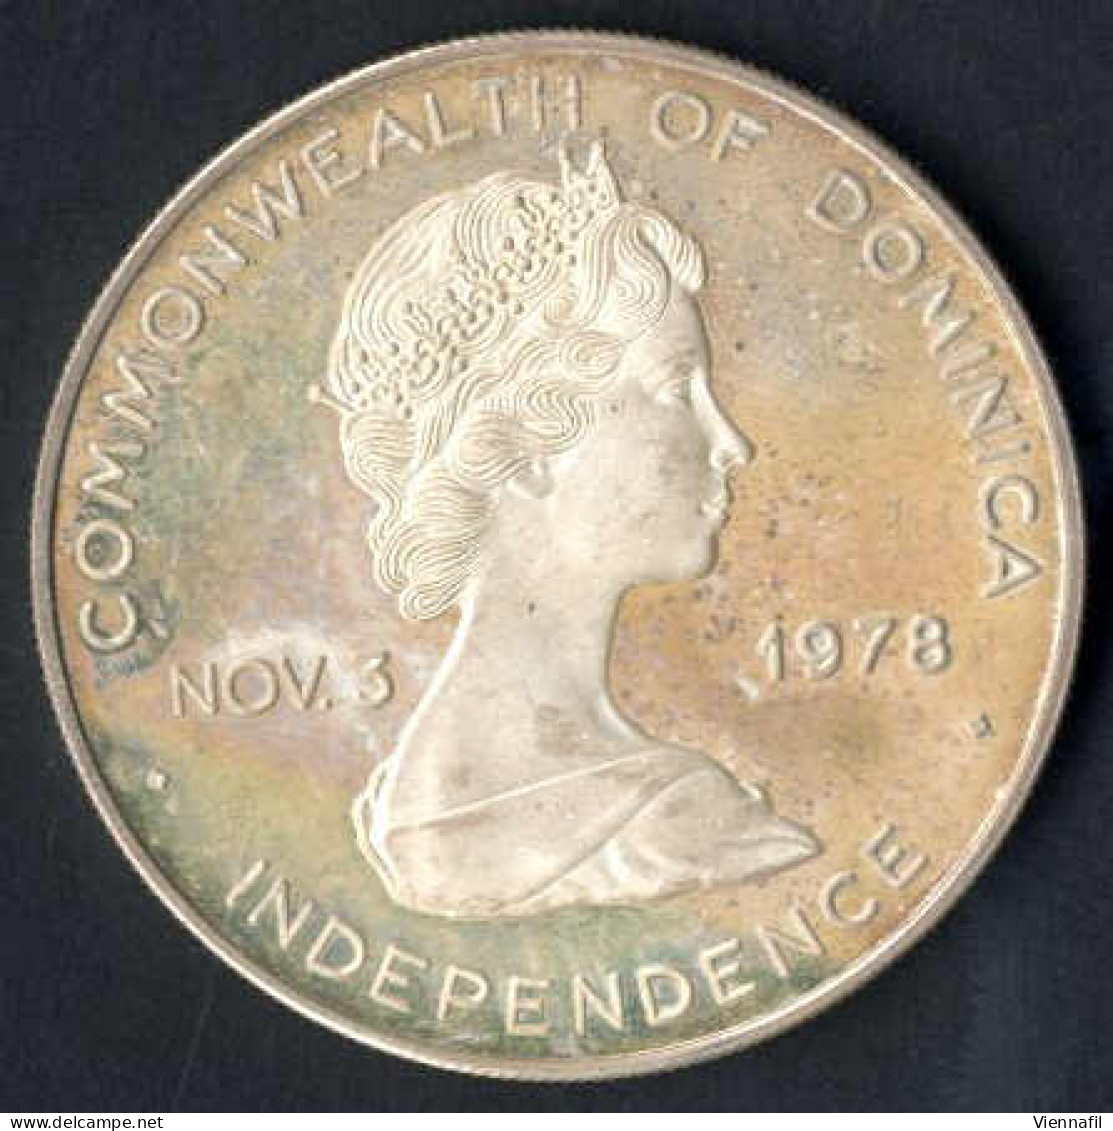 10 Dollar Johannes Paul II,1979, Und Zwei Silbermünzen 1 Peso 25 Jahre Zentralbank, 1972, Unzirkuliert Und PP, Feingewic - Dominicana